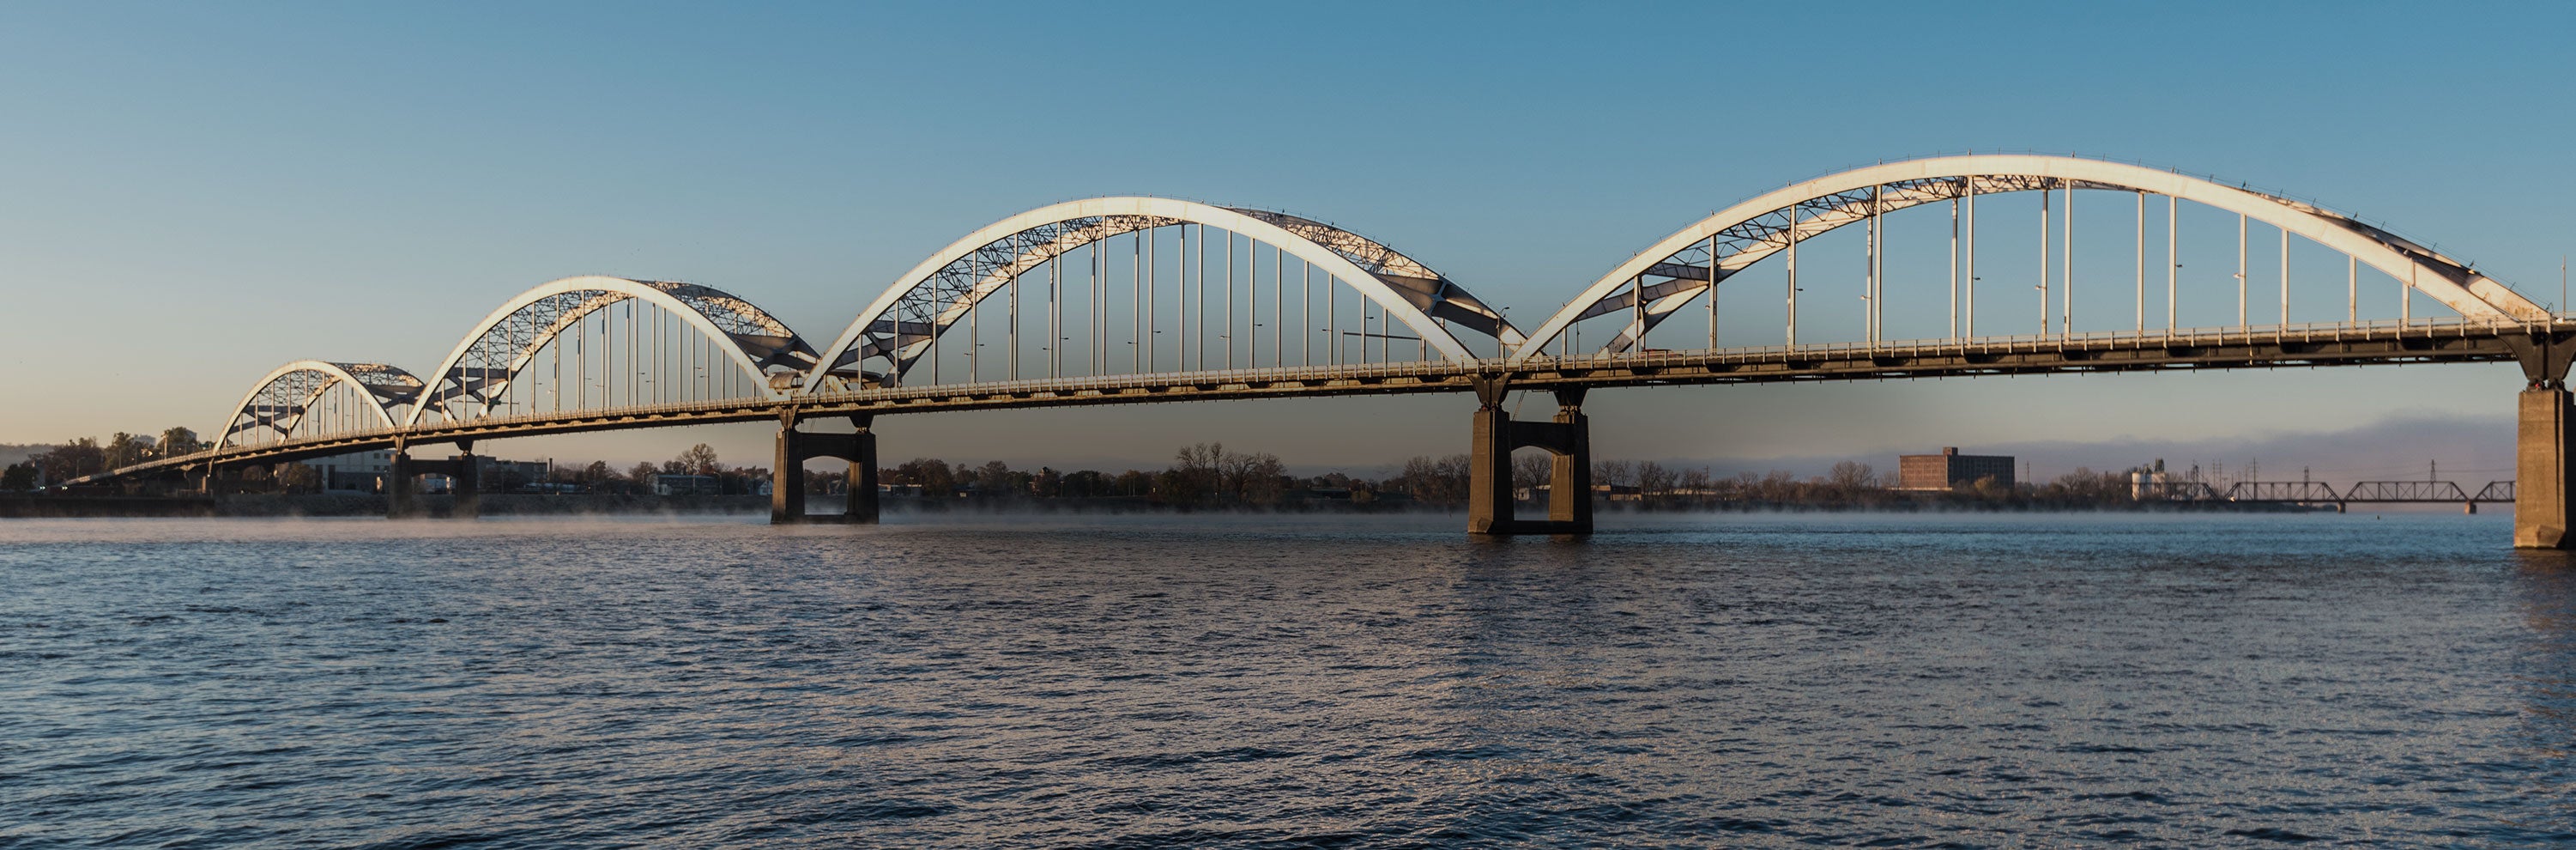 Bridge across the water in Davenport Iowa